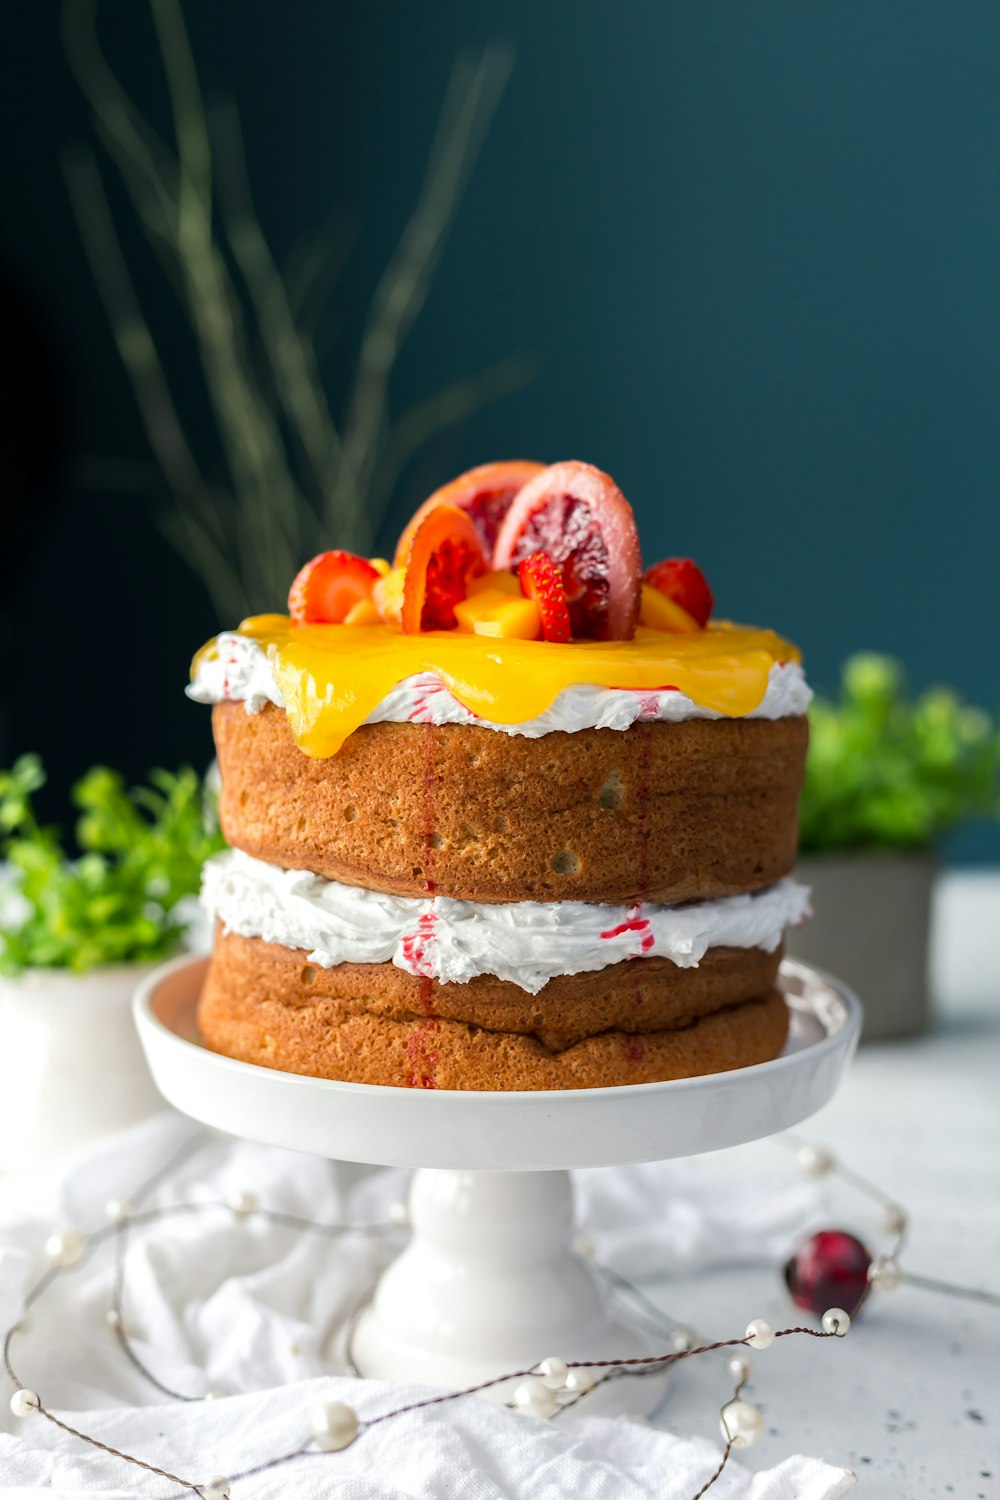 zweistöckiger Kuchen mit Zitrusfrüchten und Erdbeer-Toppings